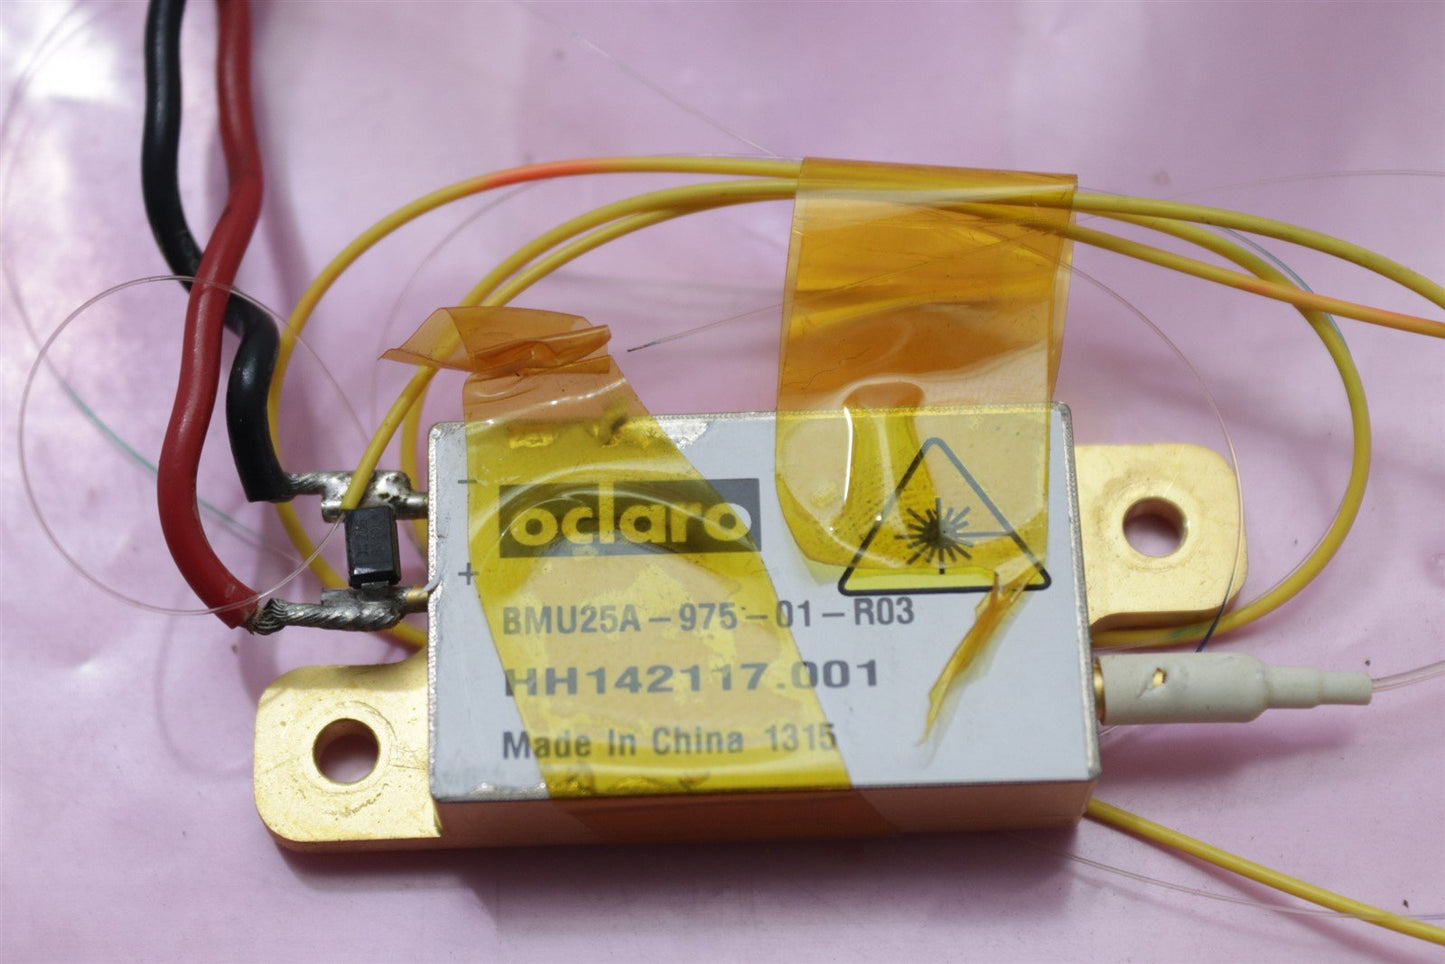 Oclaro Uncooled Multimode Laser Diode Module BMU25A-975-01-R03